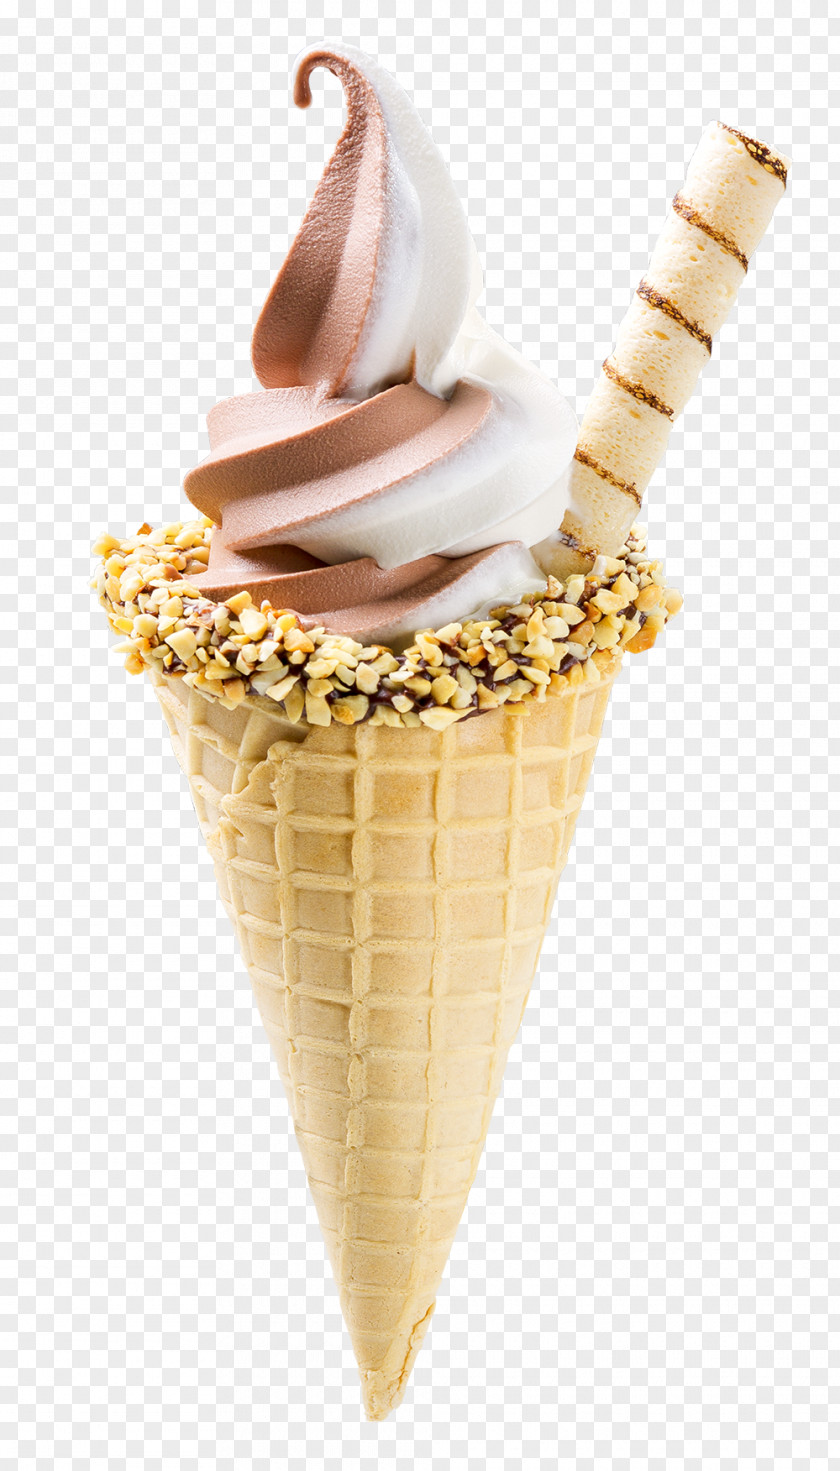 Ice Cream Cones Sundae Chocolate Chiquinho Sorvetes PNG